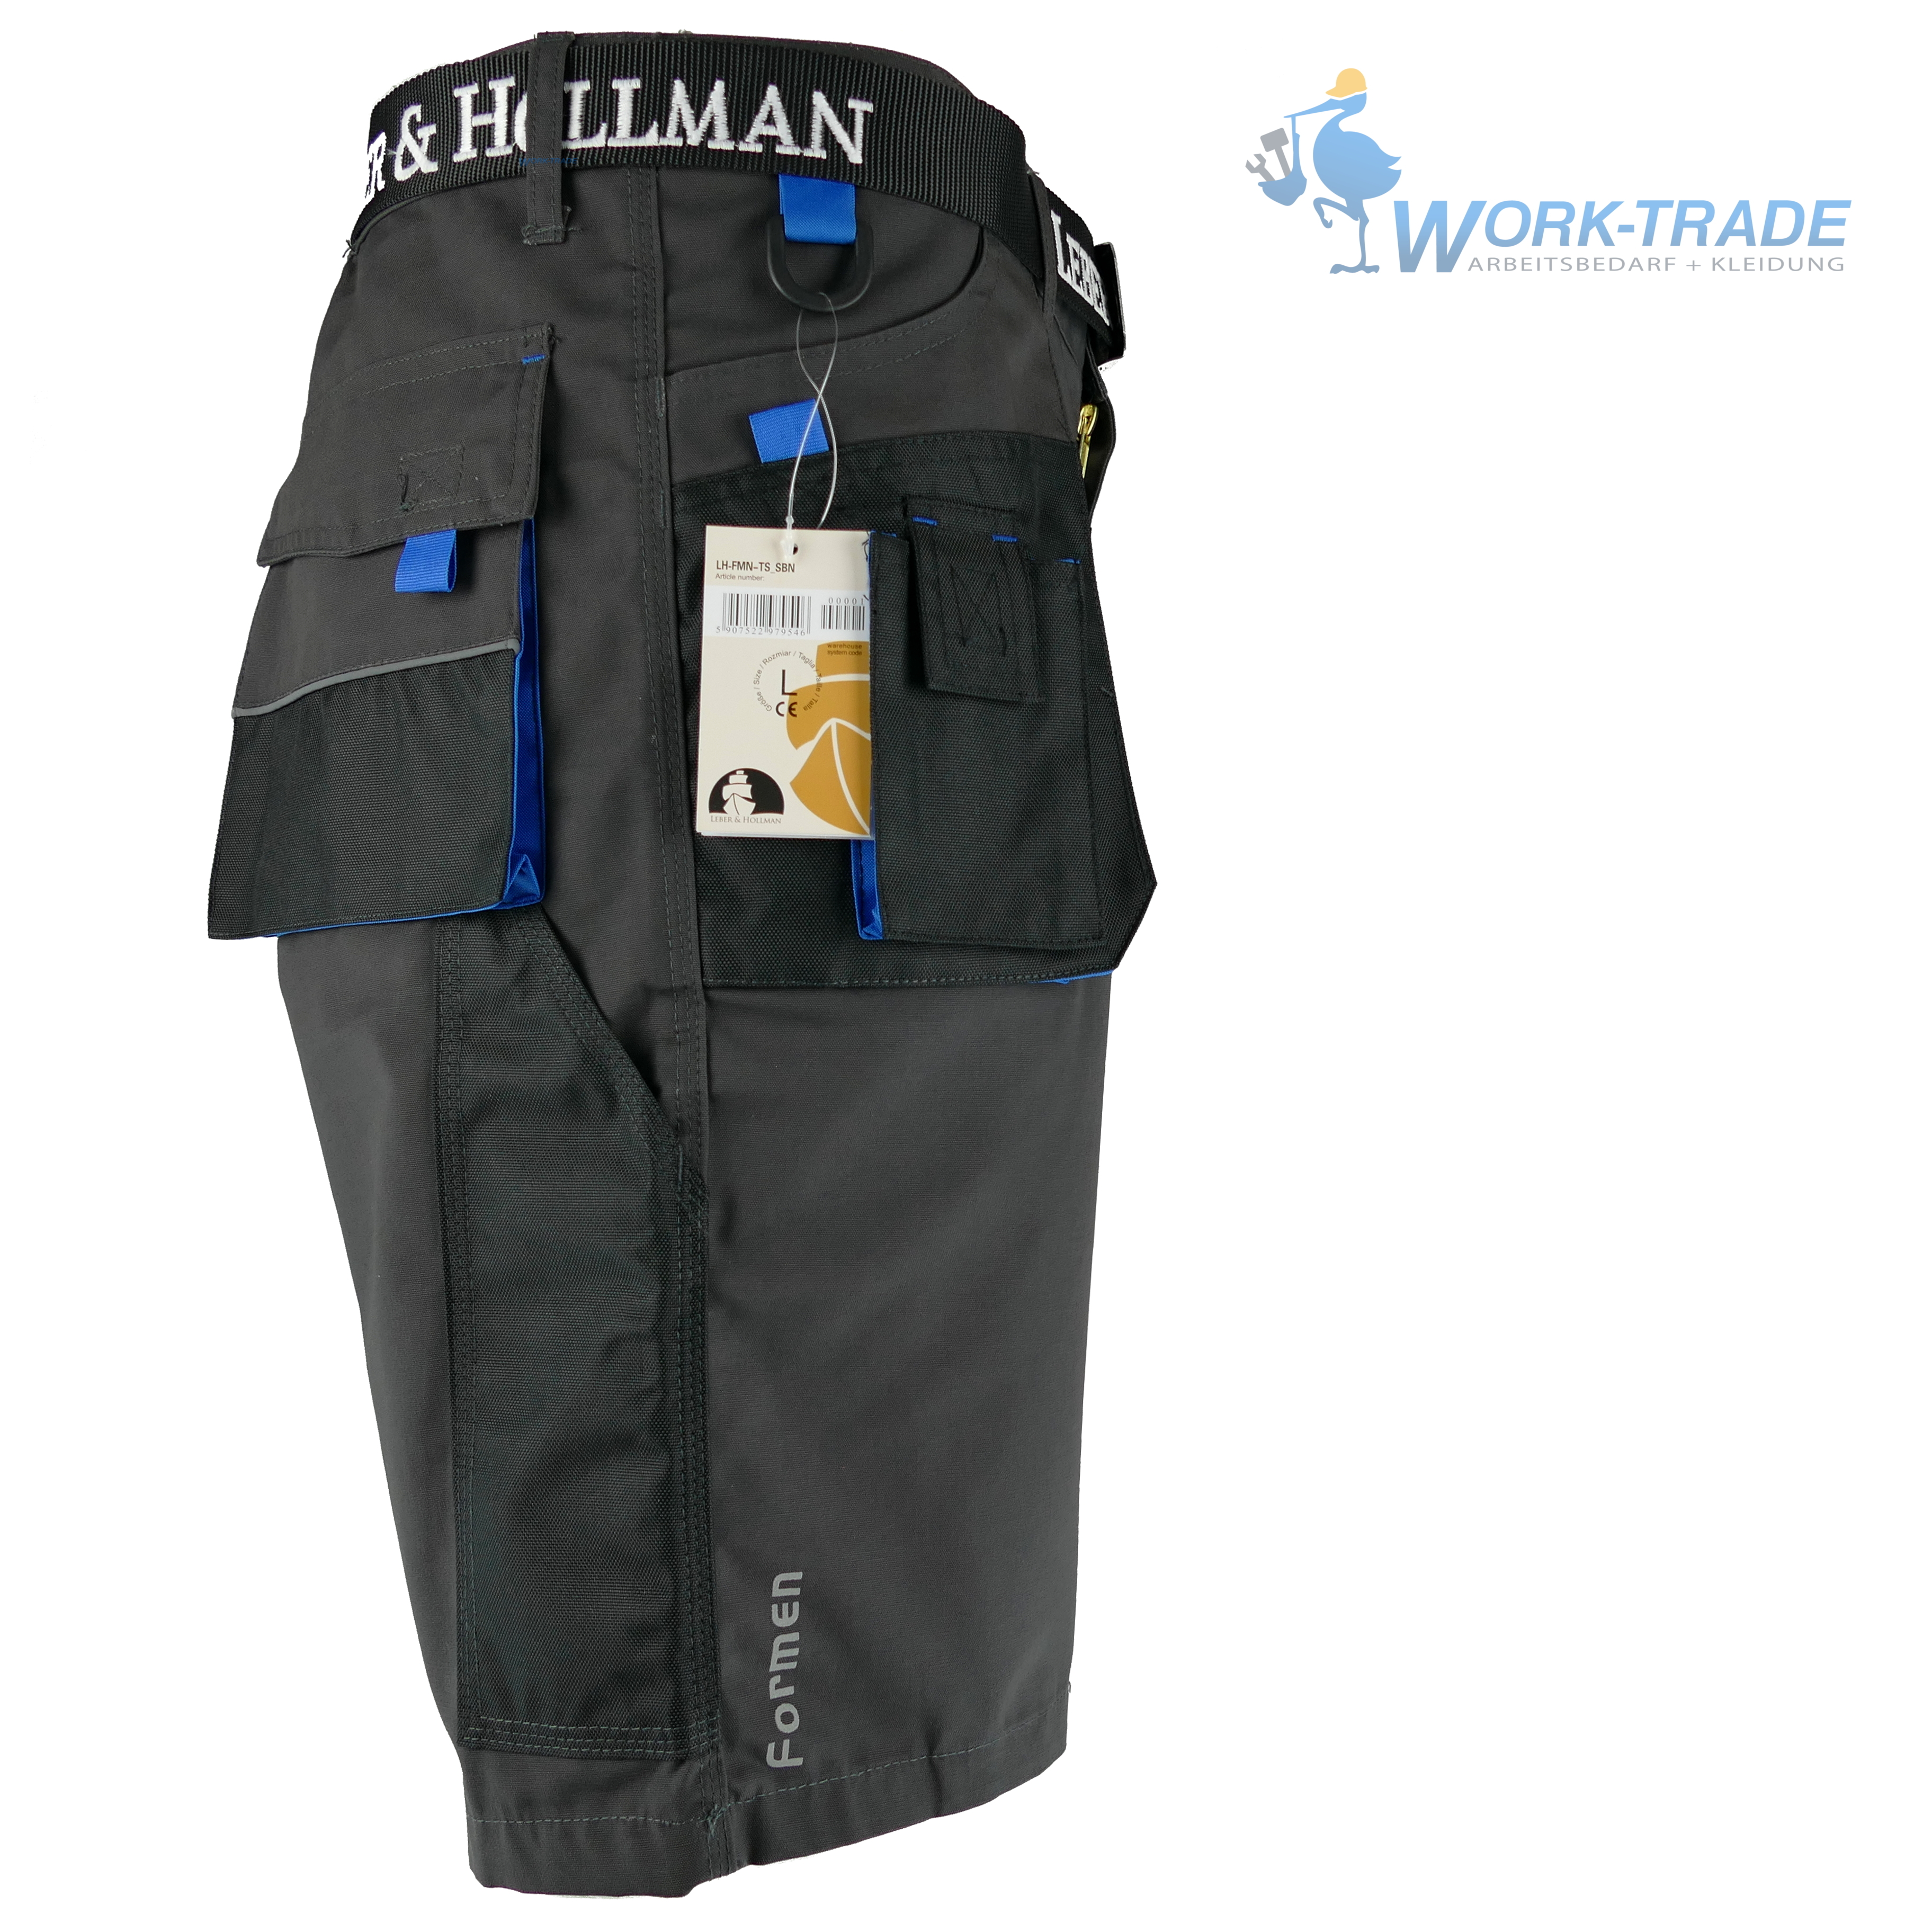 Bundhose mit Multifunktionstaschen Schlaufe und Schlüsselhaken 65% Polyester 35% Baumwolle 270 g/m2 Leber & Hollman Herren kurze Arbeitshose LH-FMN-TS 